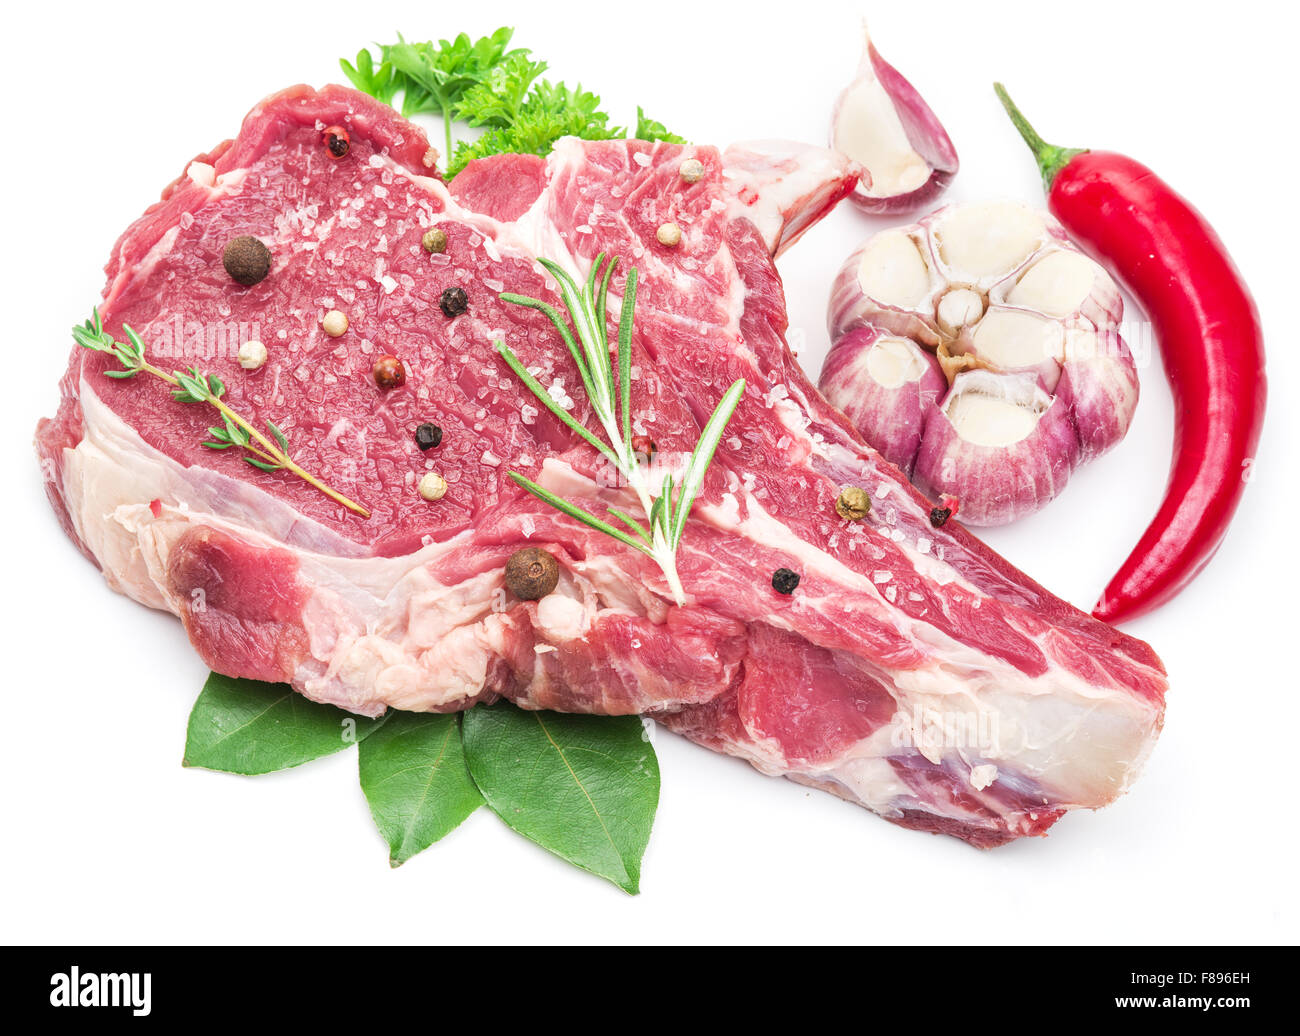 Rohes Rindfleisch Fleisch Steak mit Gewürzen auf dem weißen Hintergrund. Stockfoto